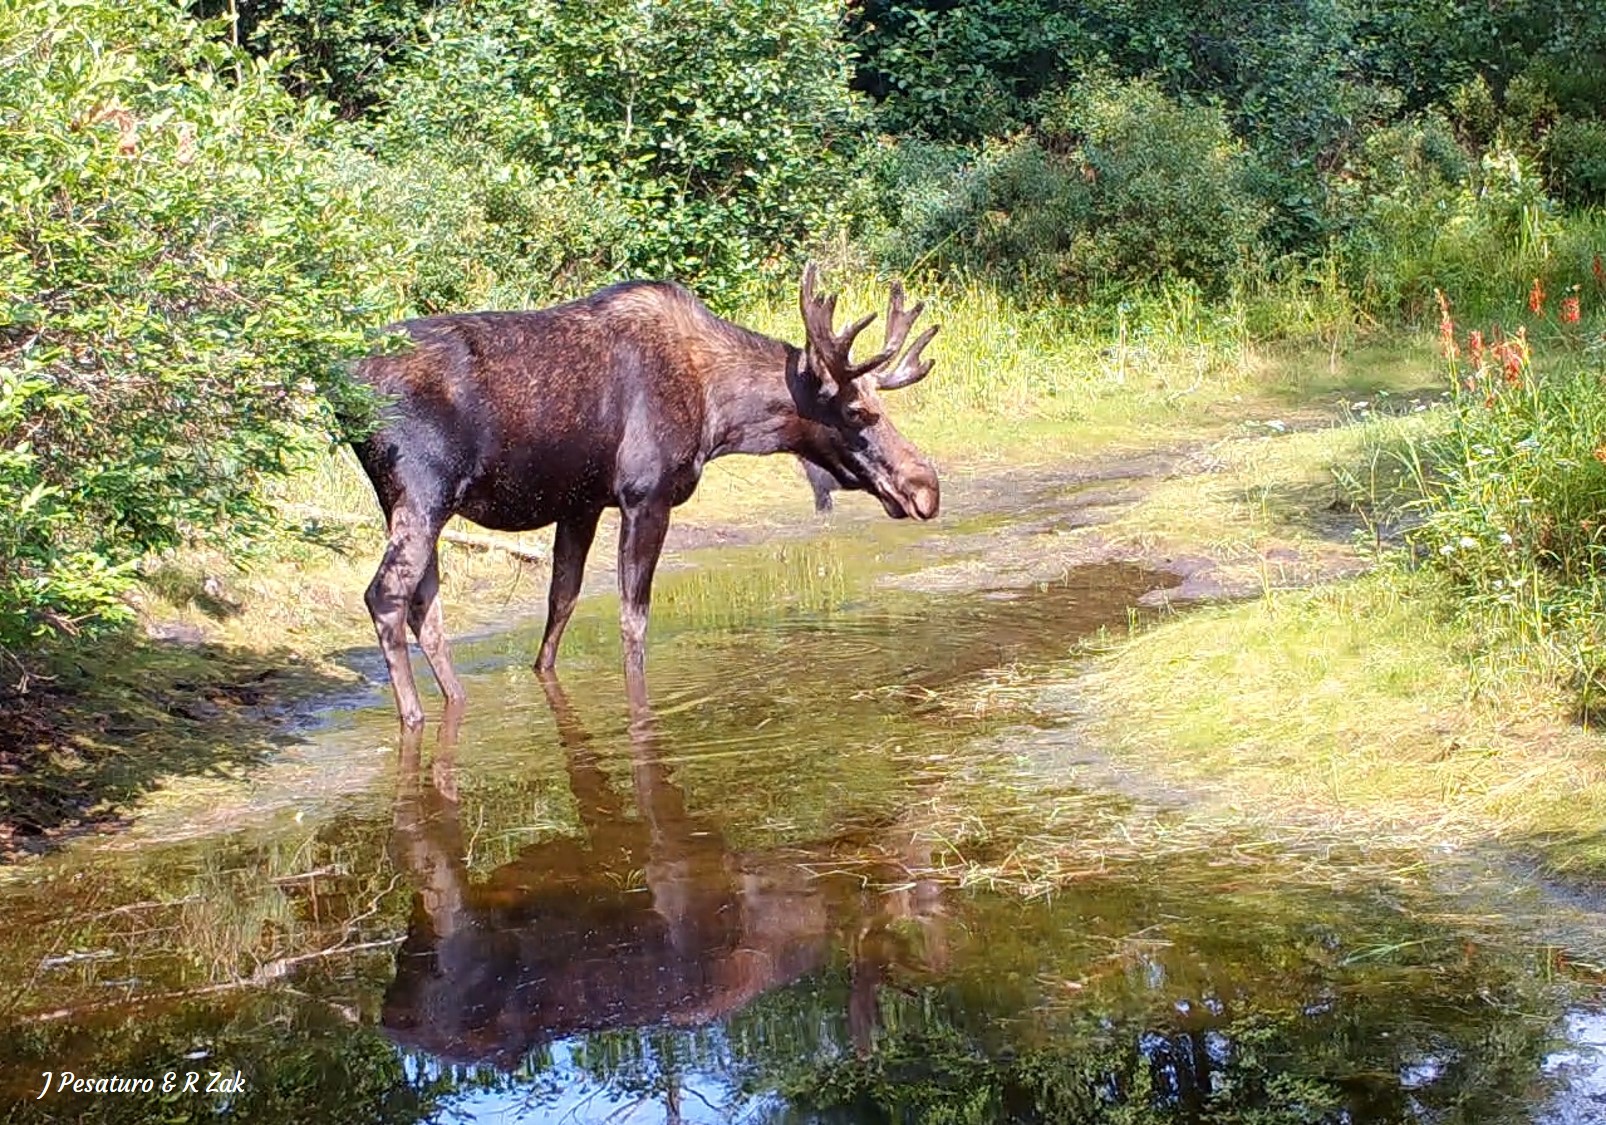 A bull moose at a wetland